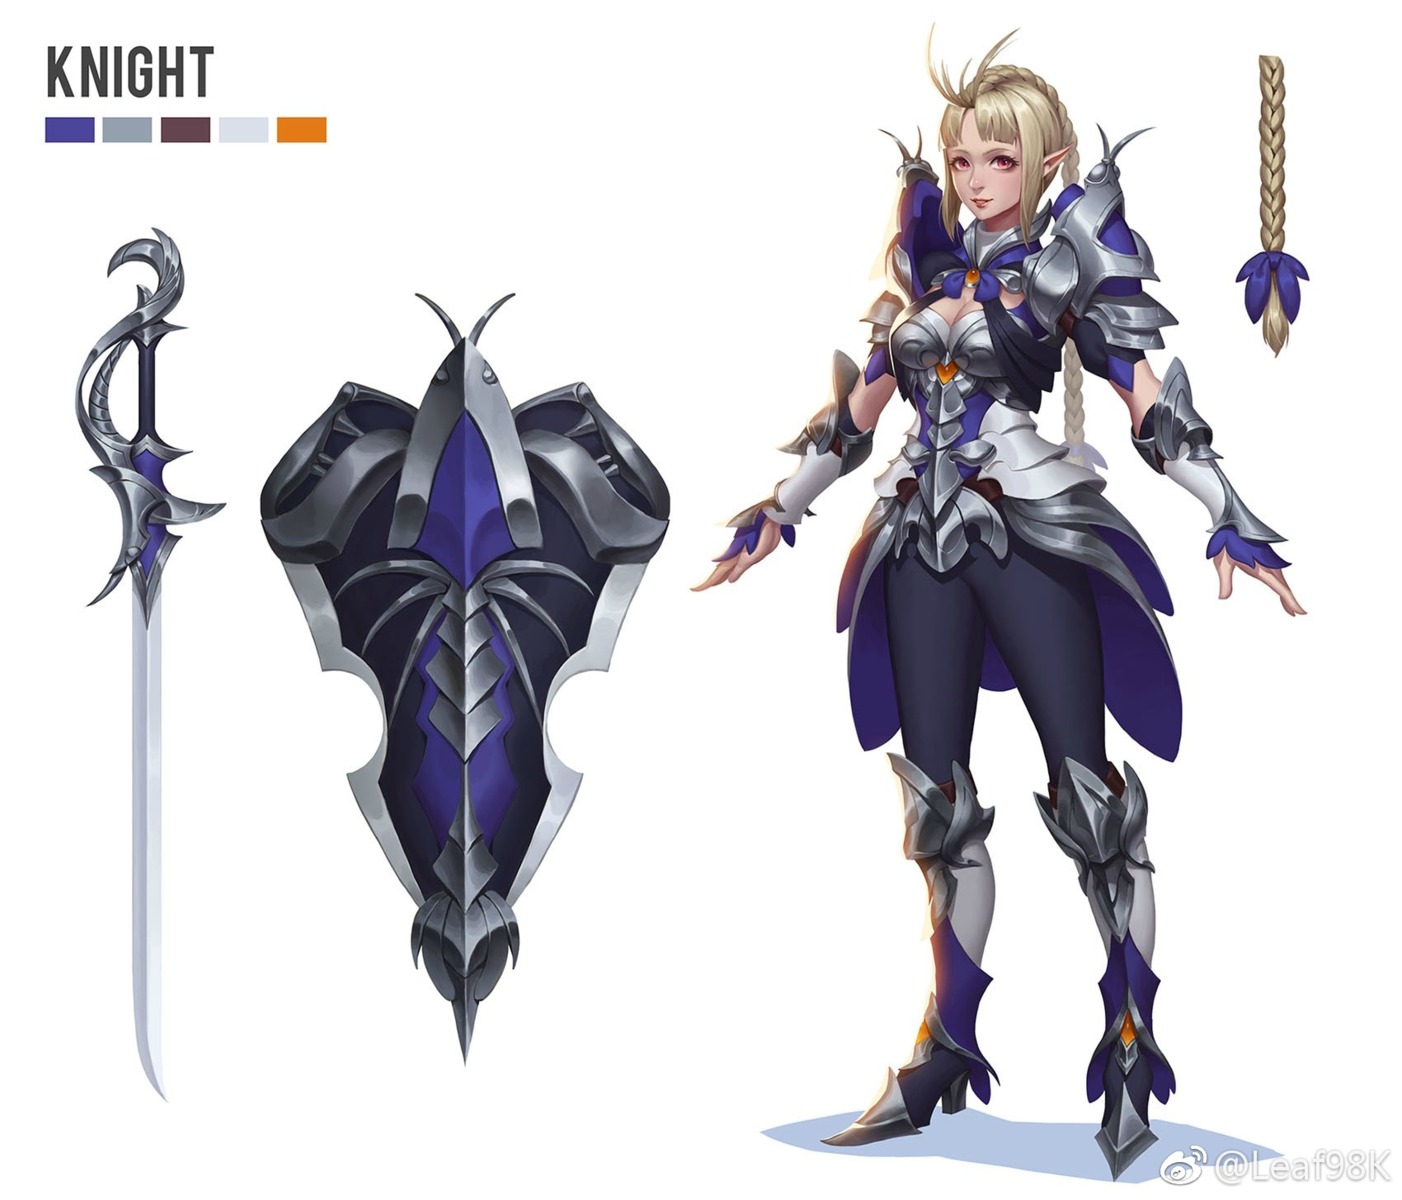 armor character_design cleavage heels leaf98k pointy_ears sword